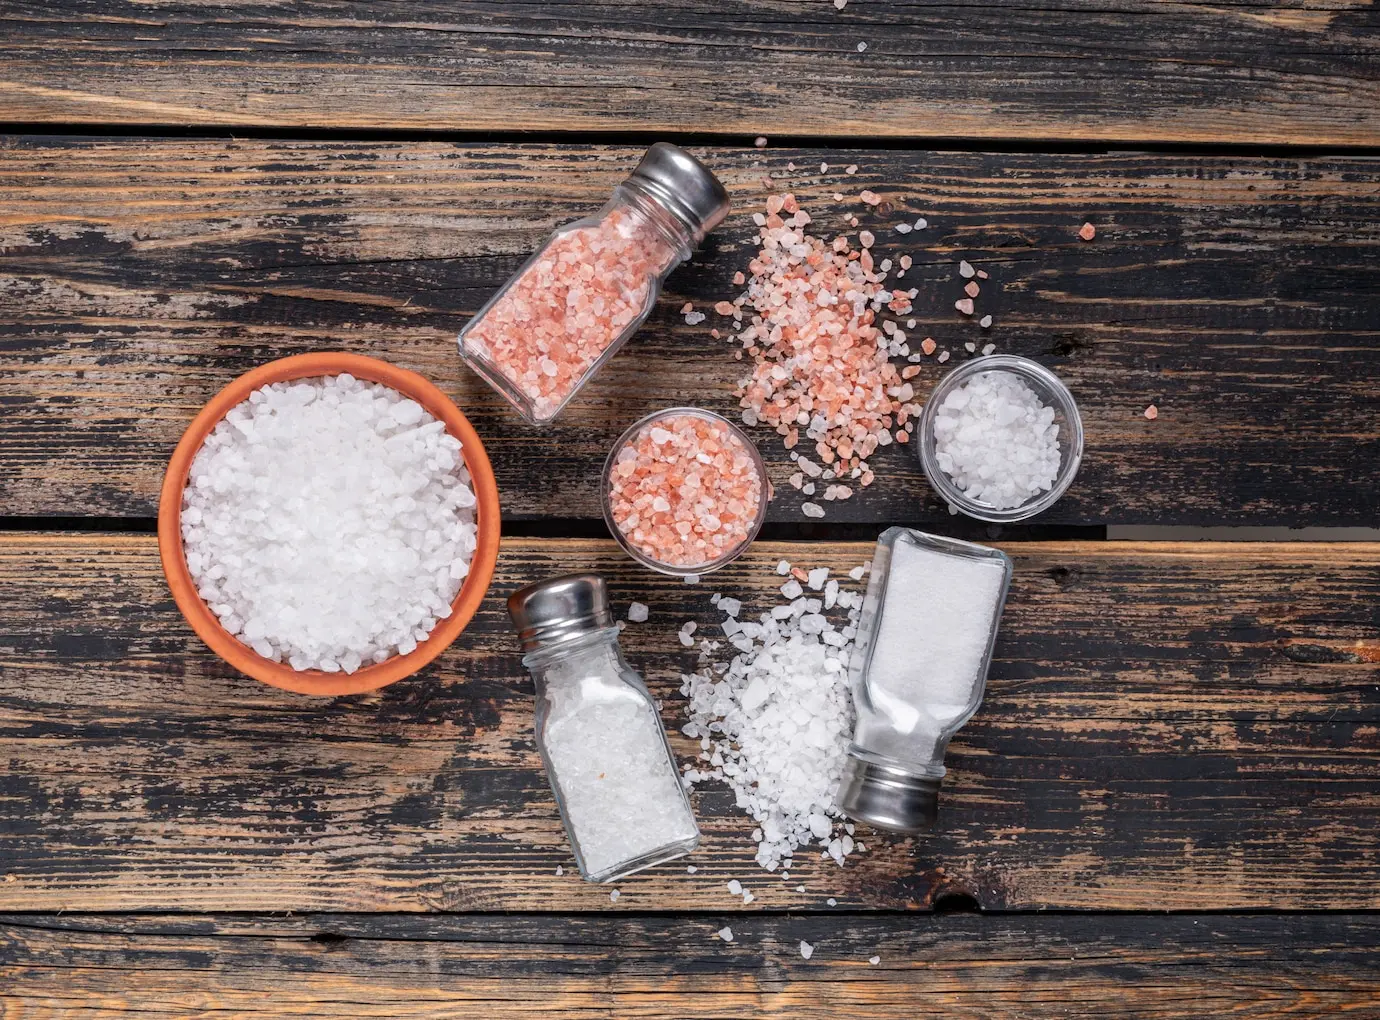 เกลือสูตรโซเดียมต่ำ (Low Sodium Salt)